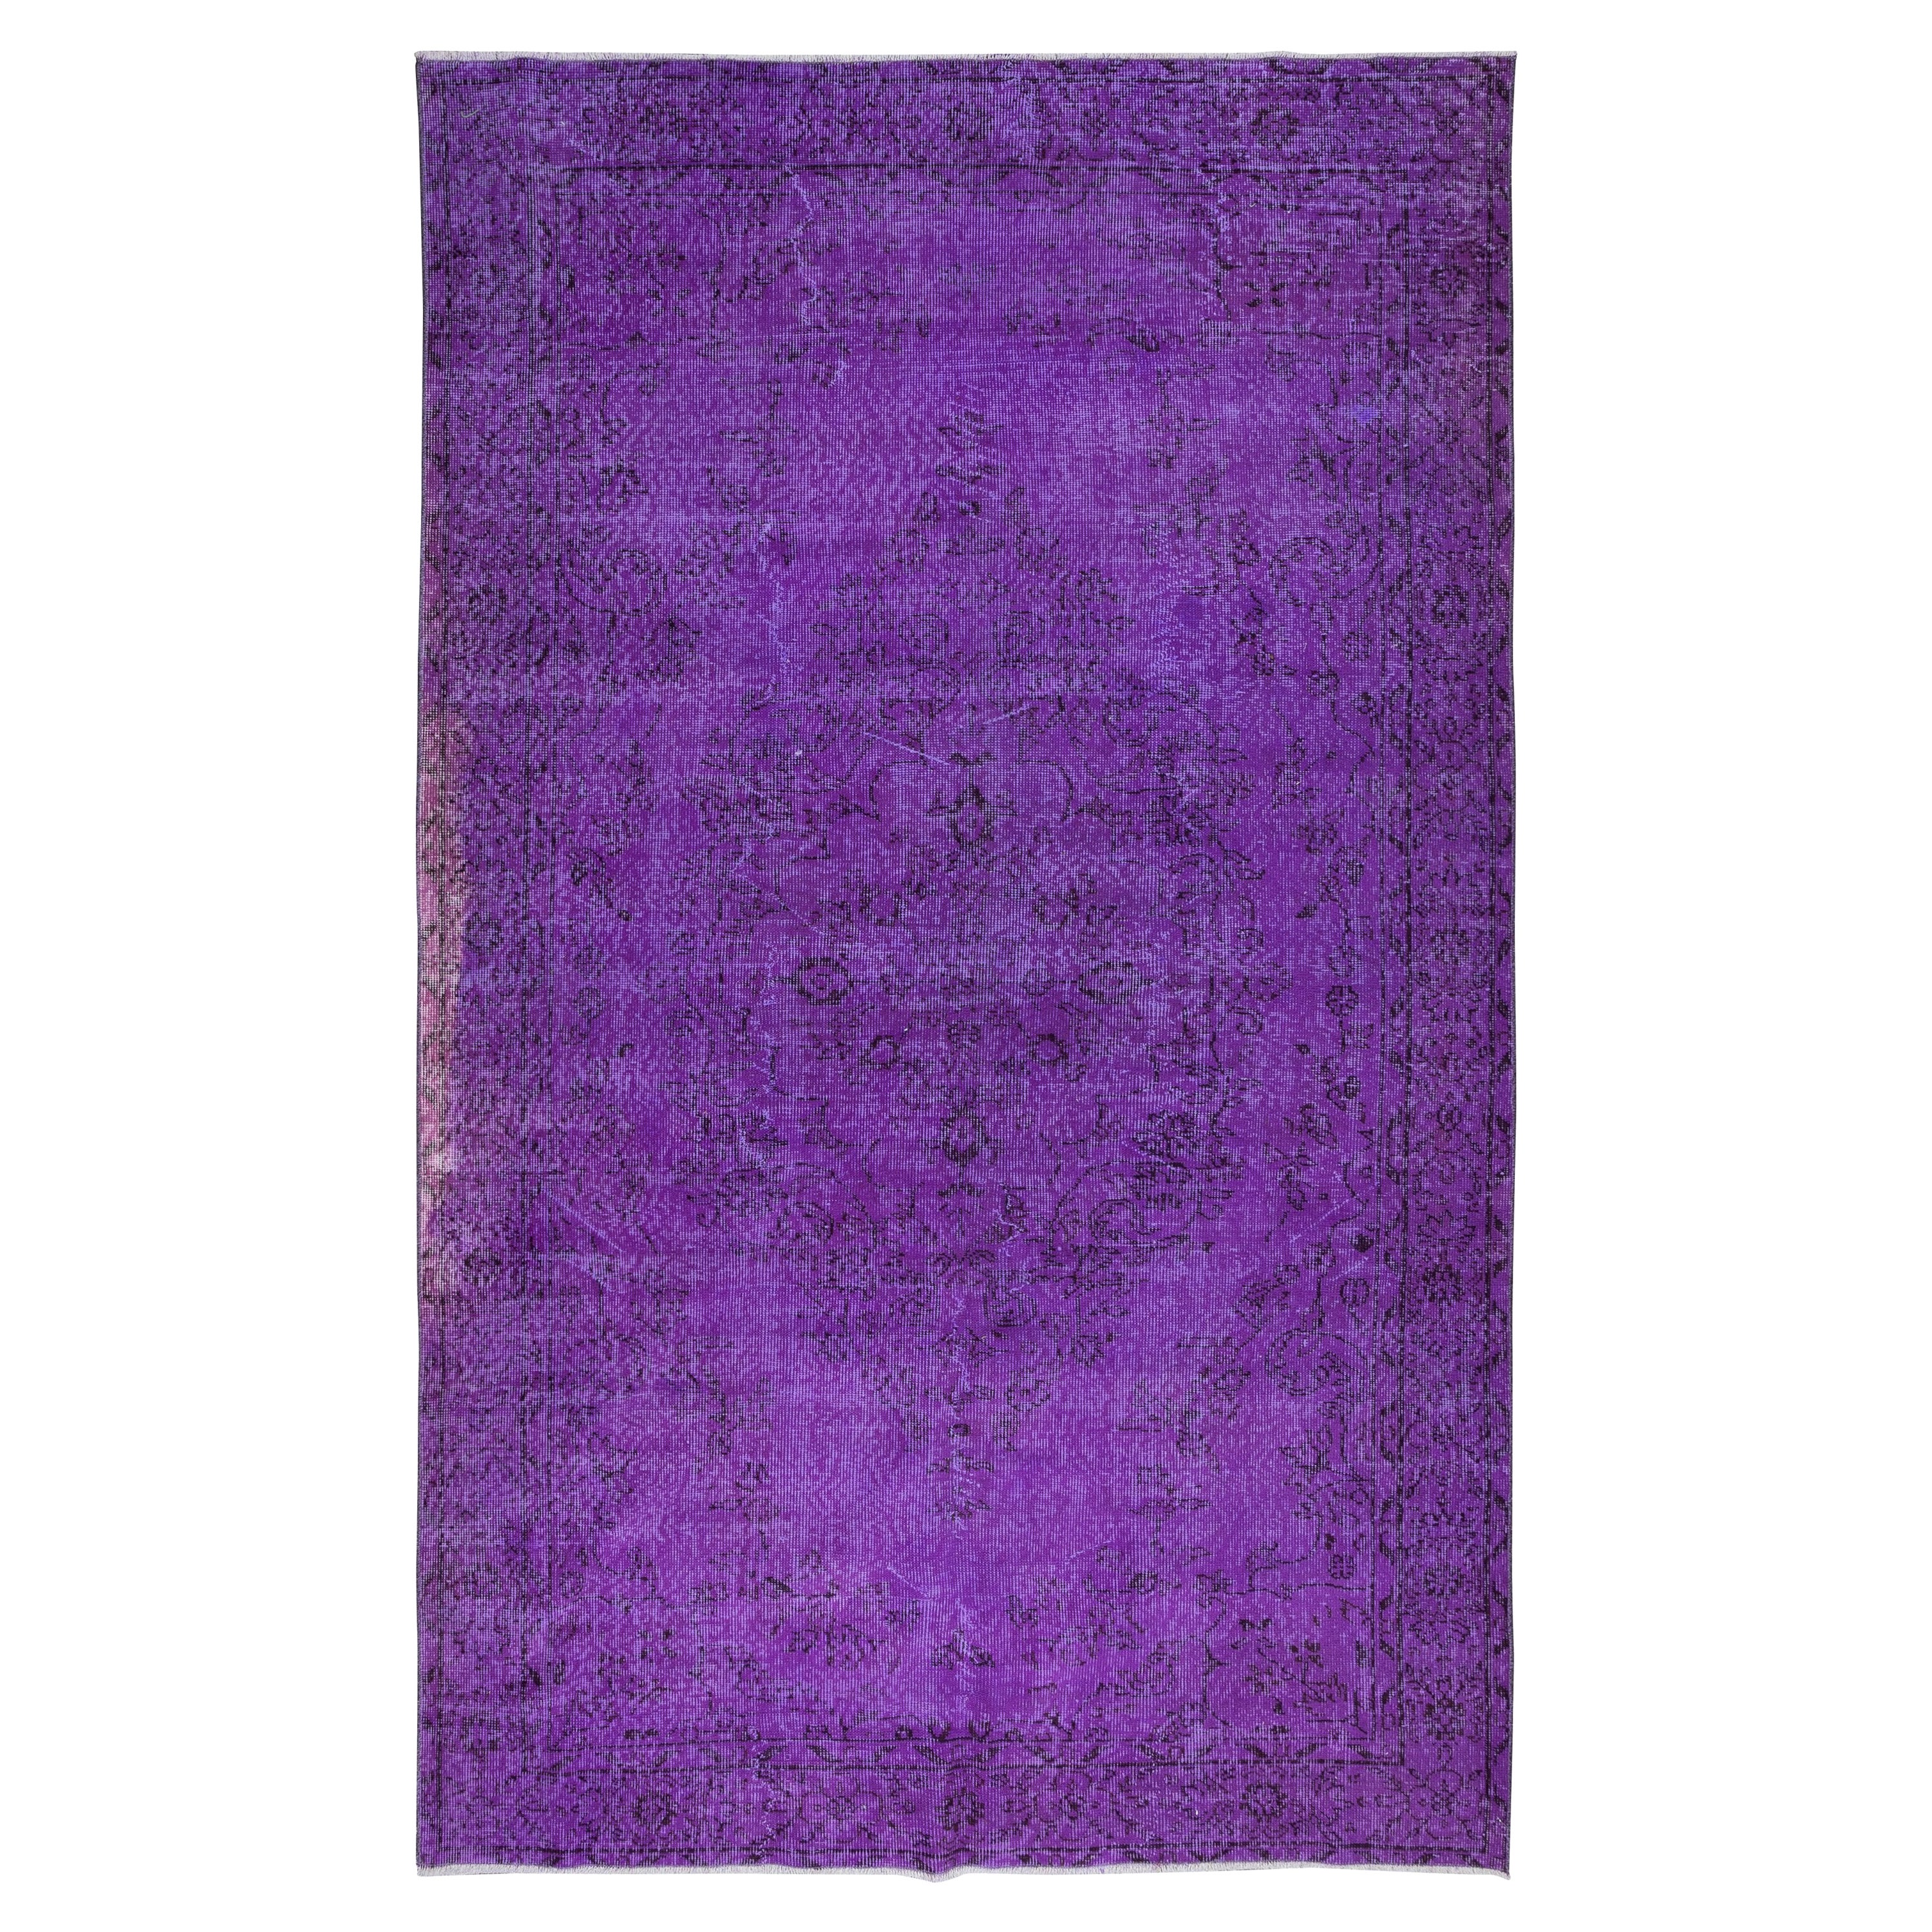 5.8x9.6 Ft Dekorativer lila Teppich für modernes Interieur, handgeknüpft in der Türkei